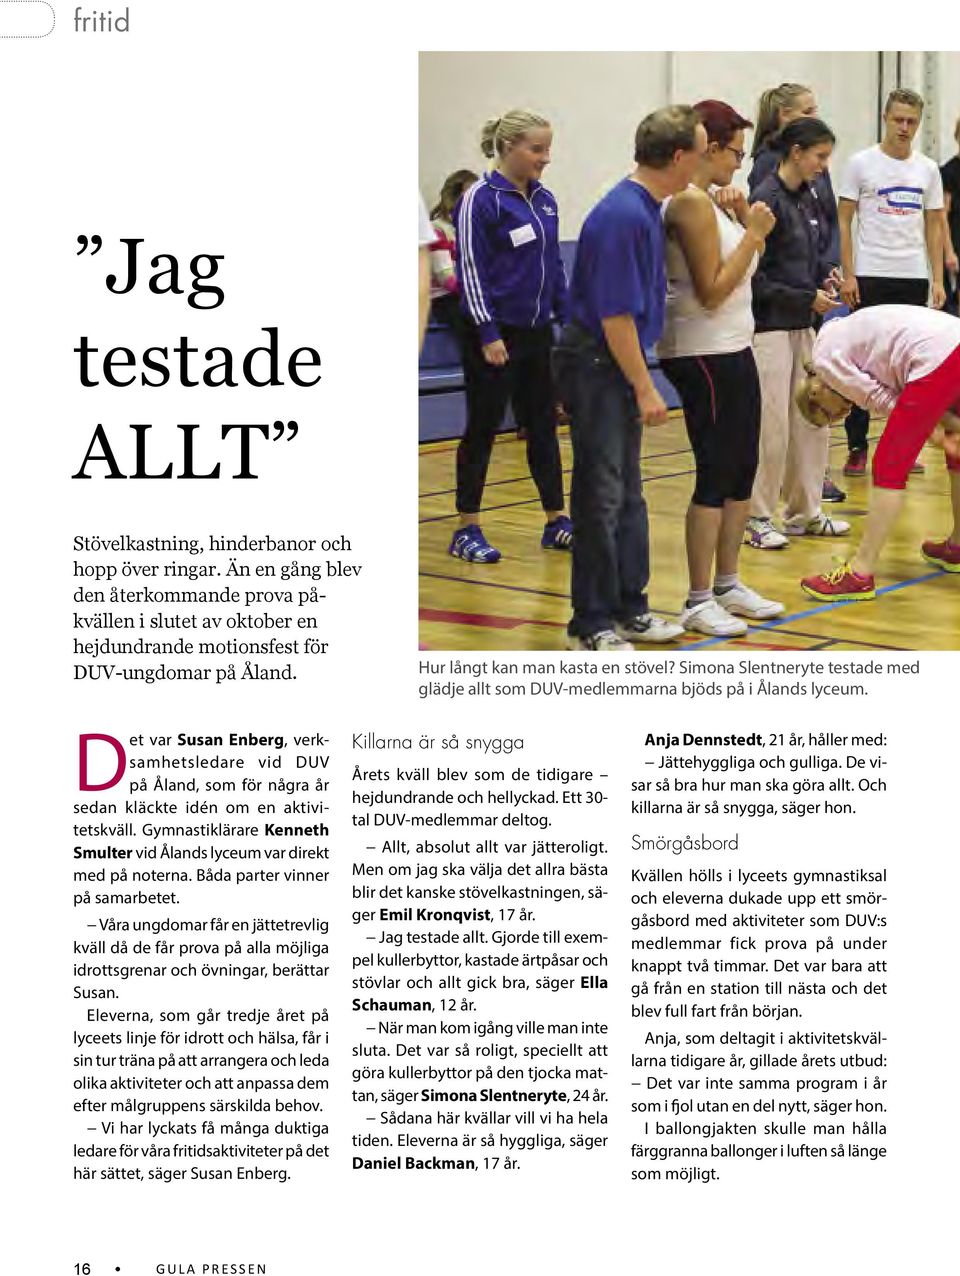 Det var Susan Enberg, verksamhetsledare vid DUV på Åland, som för några år sedan kläckte idén om en aktivitetskväll. Gymnastiklärare Kenneth Smulter vid Ålands lyceum var direkt med på noterna.